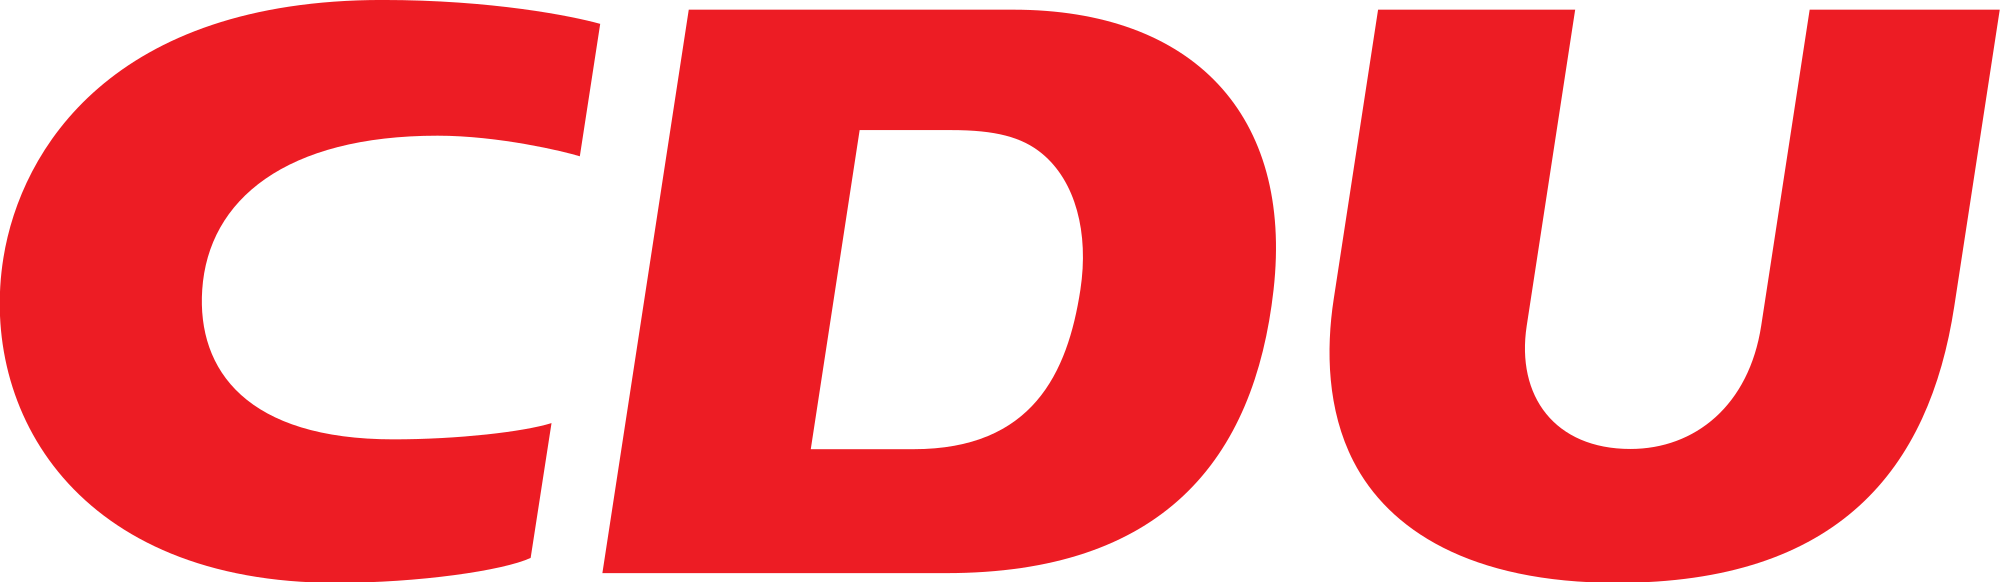 2000px CDU logo.svg